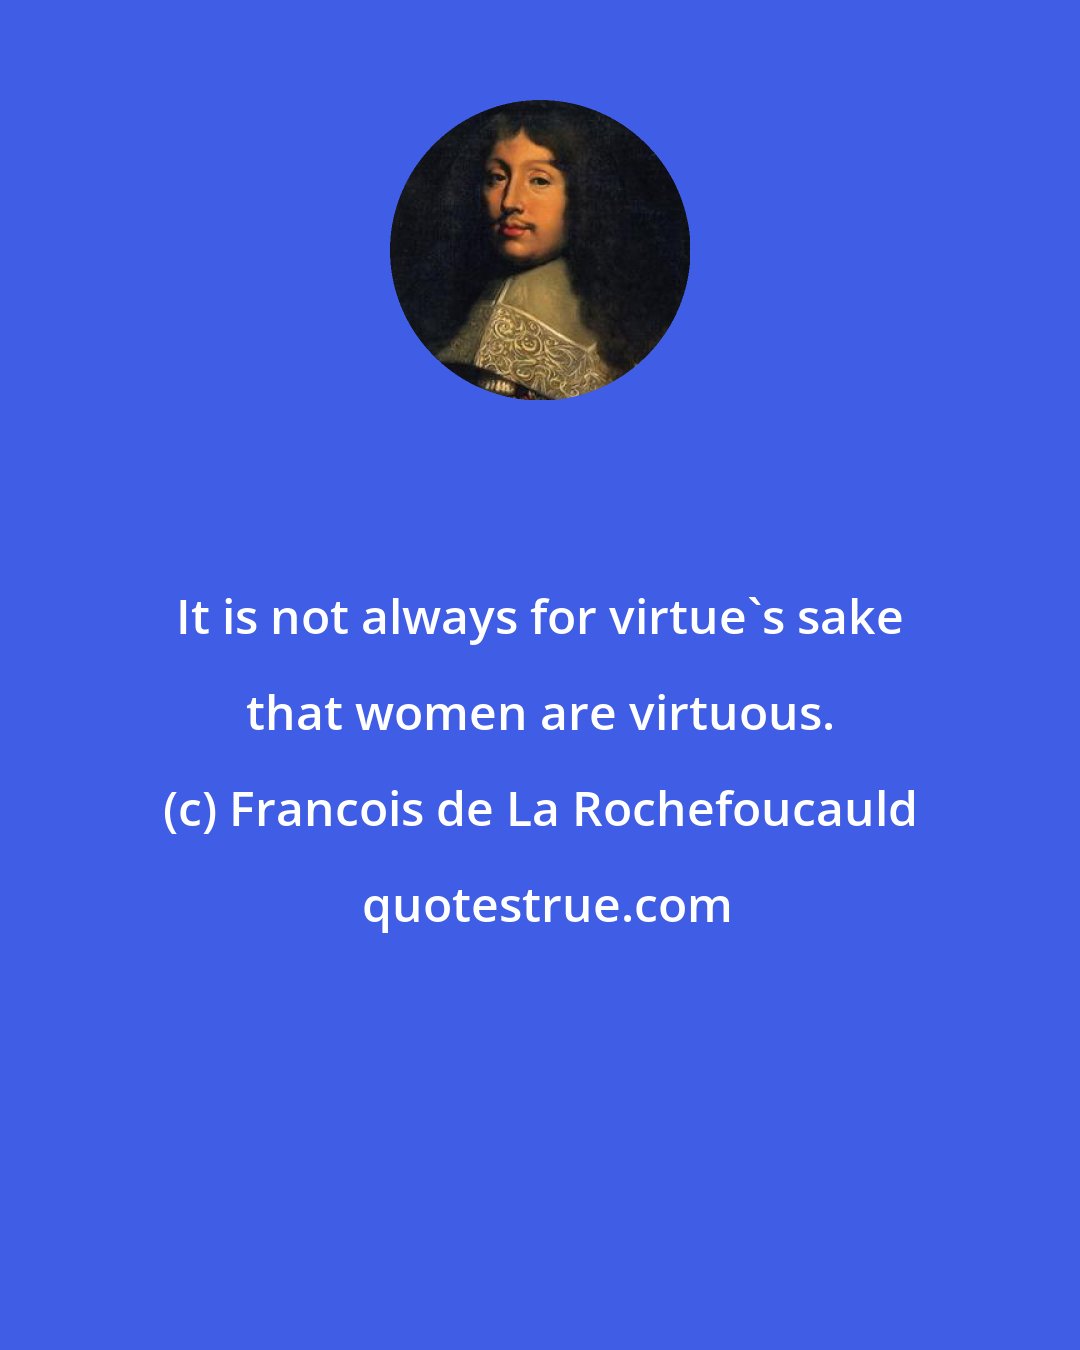 Francois de La Rochefoucauld: It is not always for virtue's sake that women are virtuous.